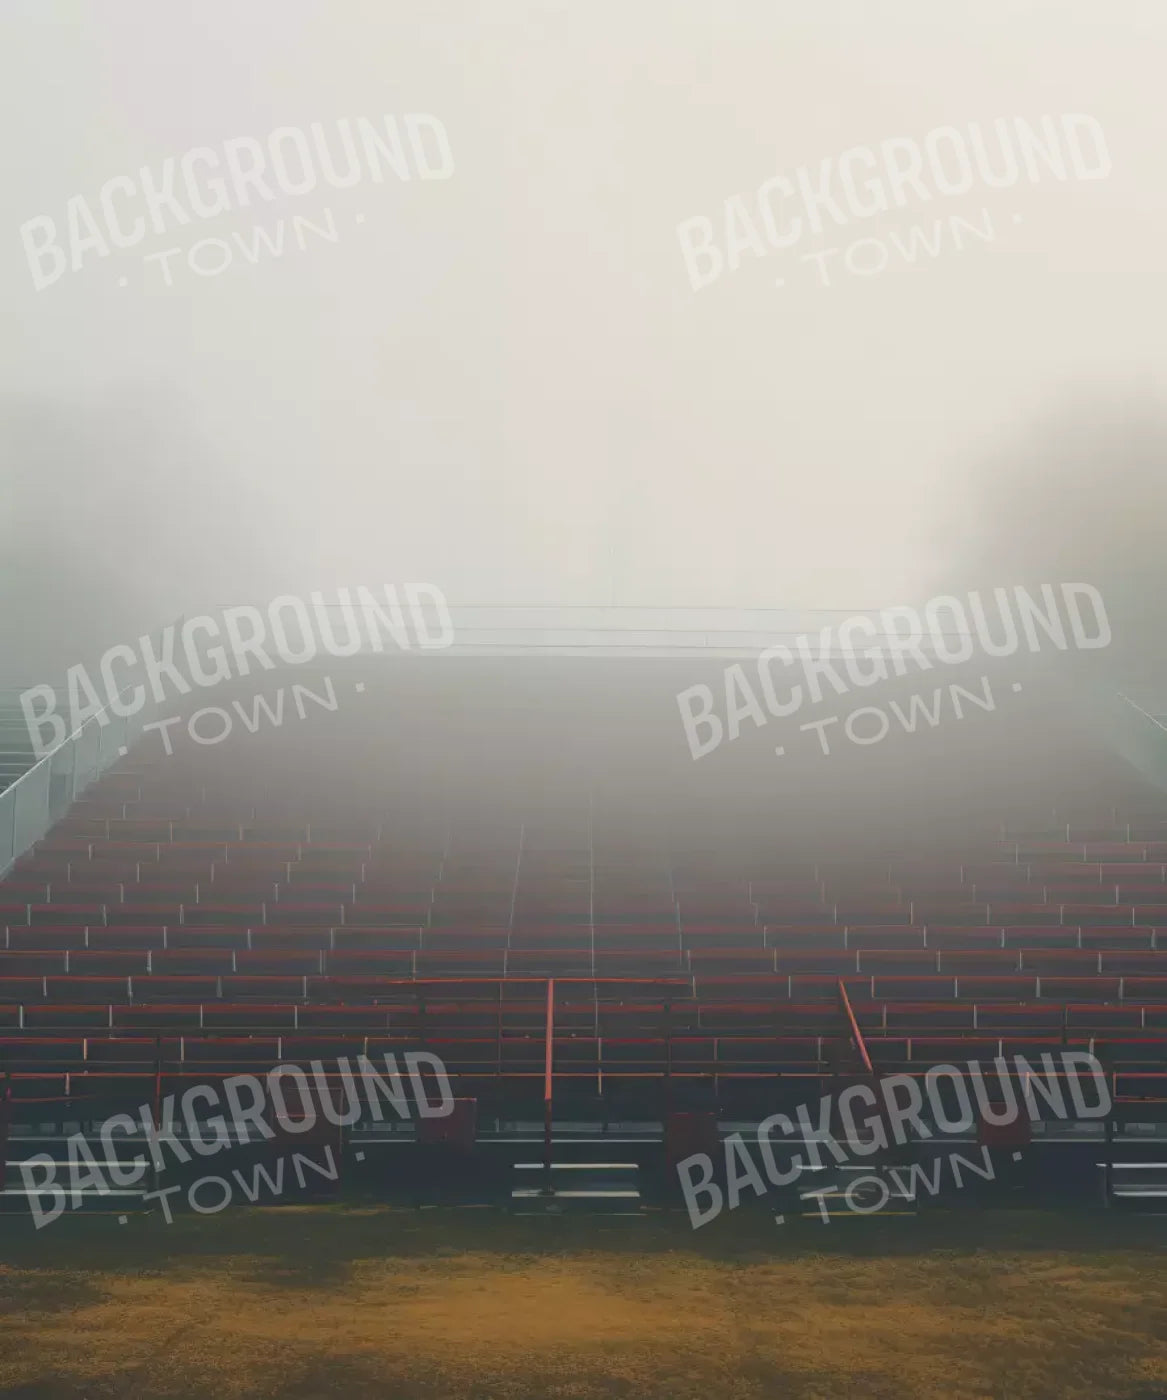 Sports Stadium Seats Iii 10’X12’ Ultracloth (120 X 144 Inch) Backdrop